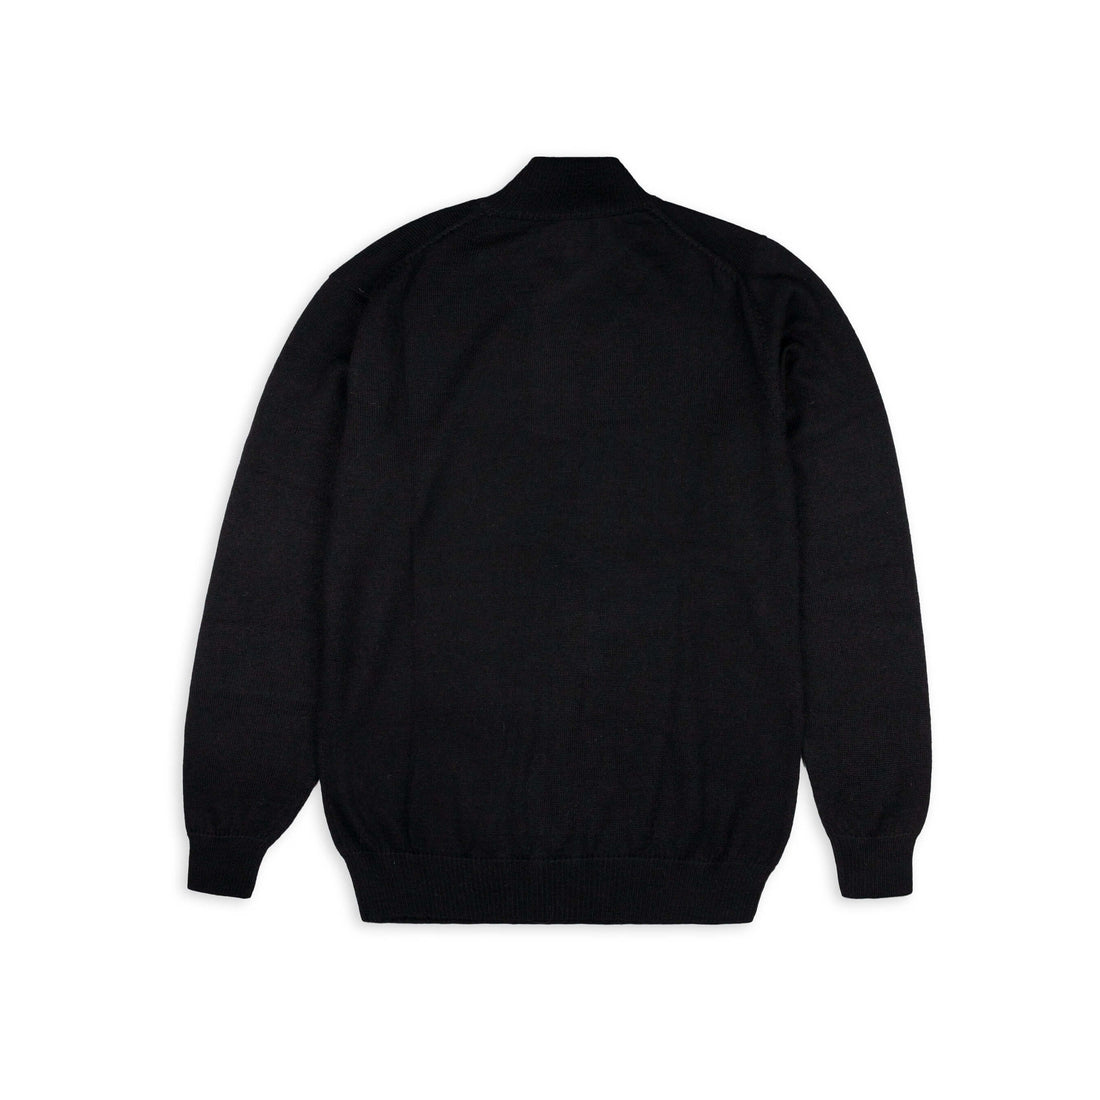 Alpakin Katari Alpaka Pullover für Herren mit Reißverschluss in schwarz von hinten